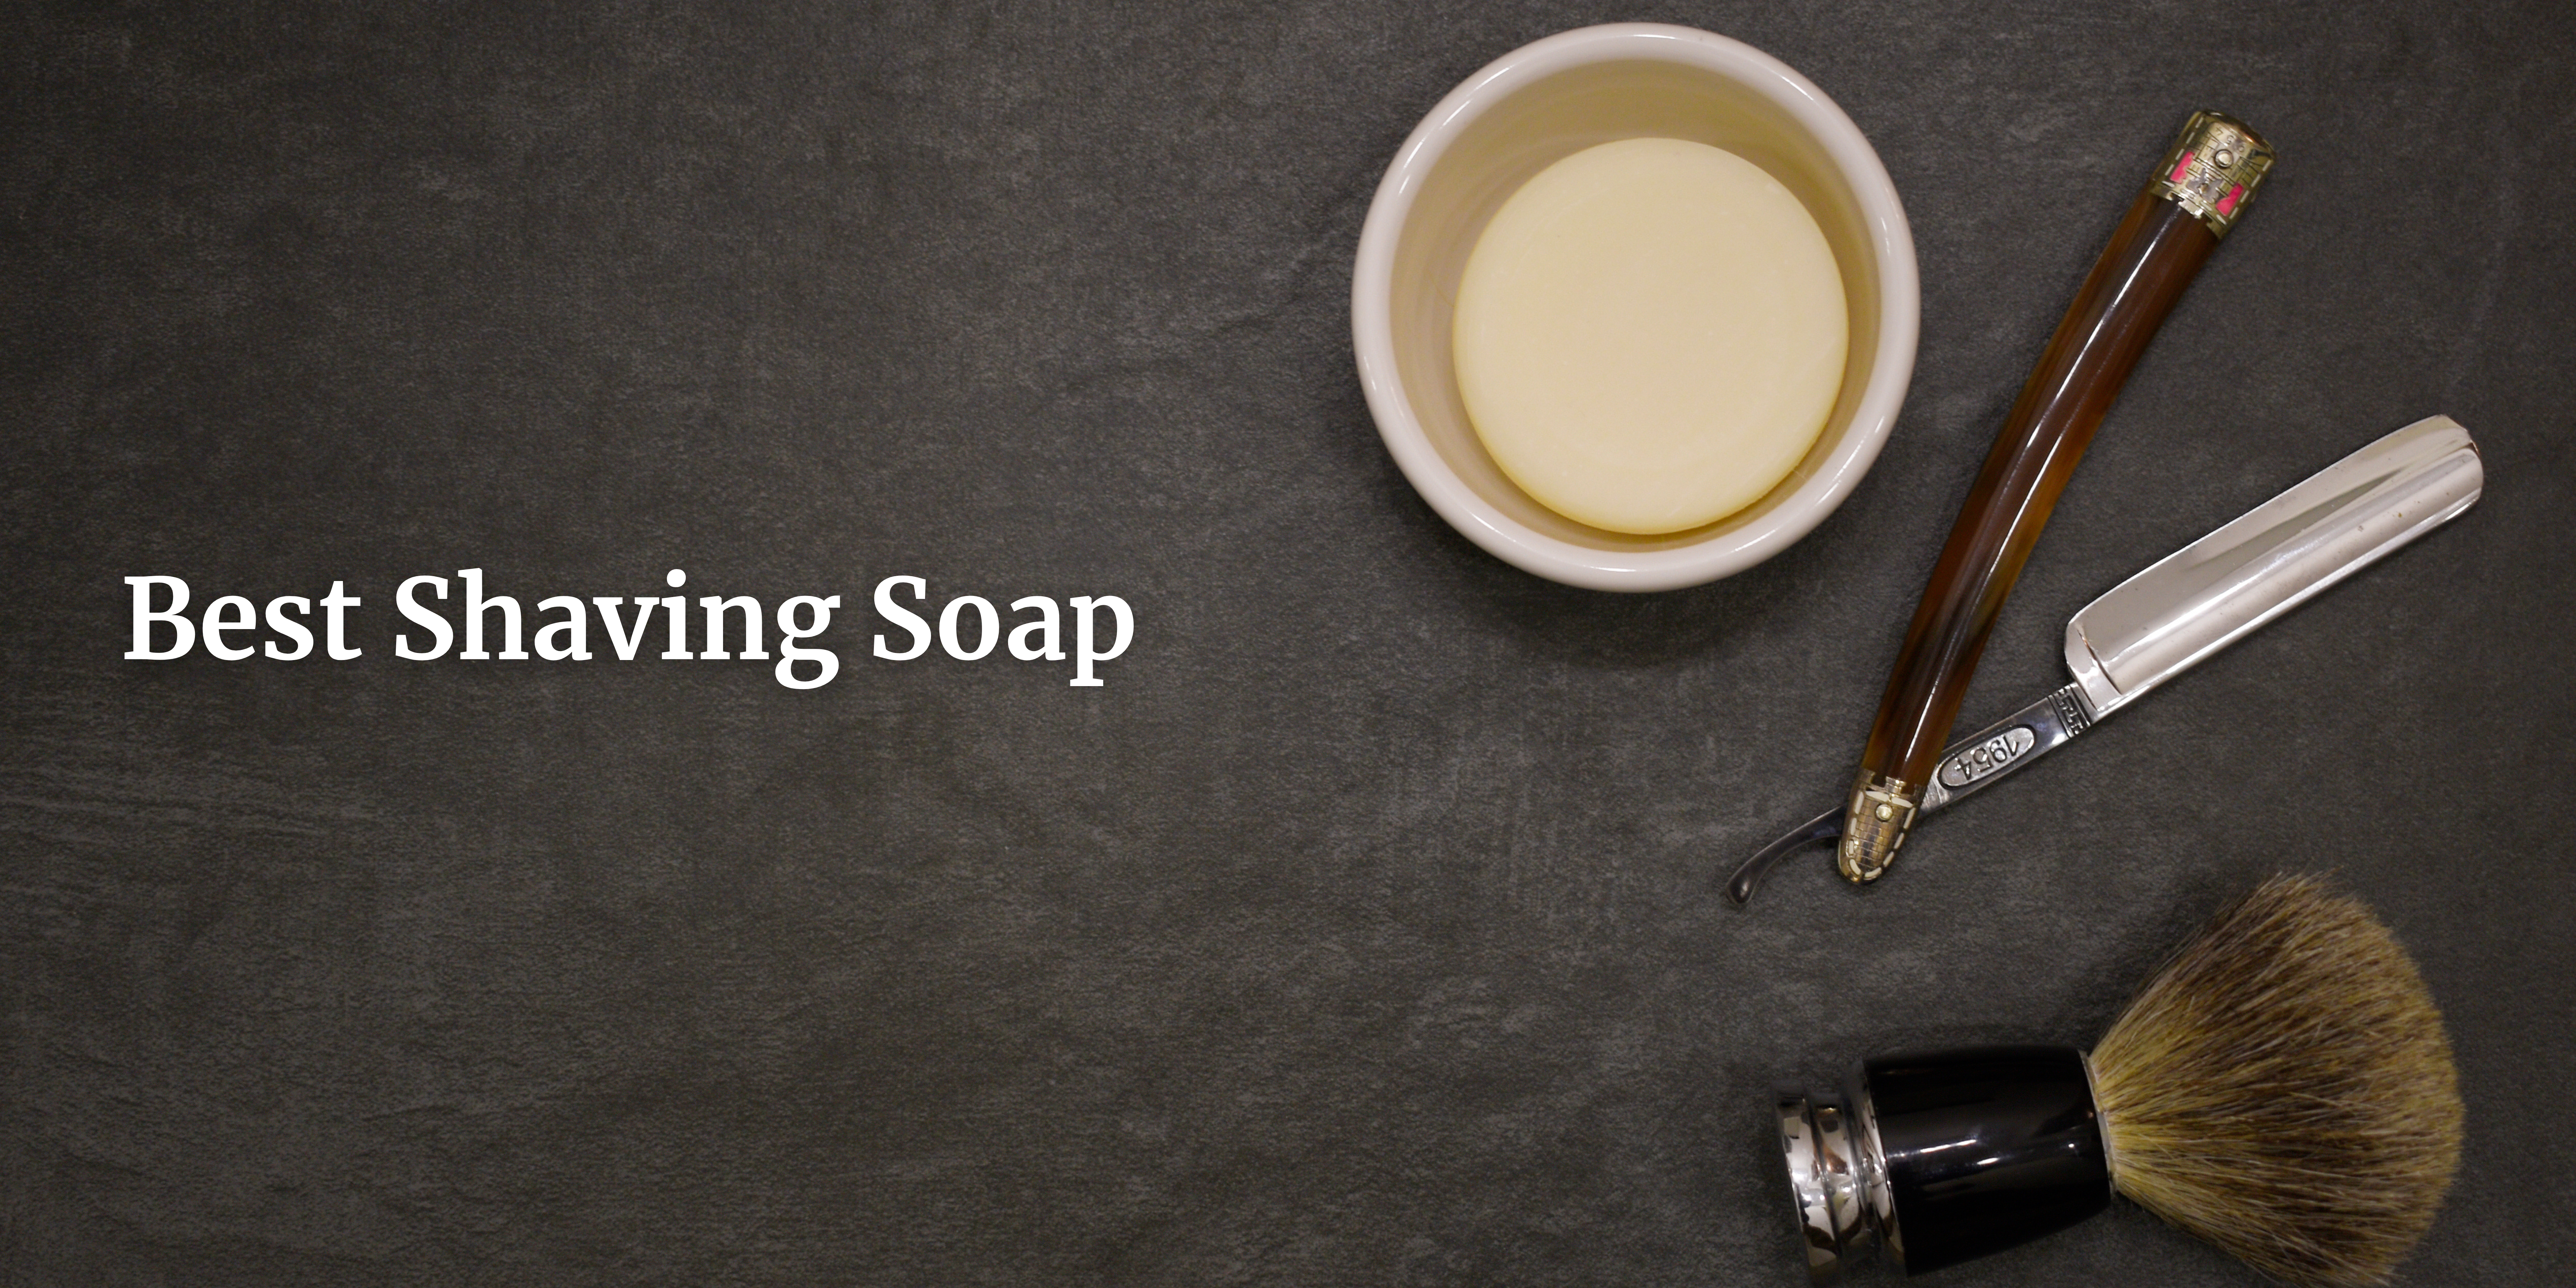 shaving soap in UAE